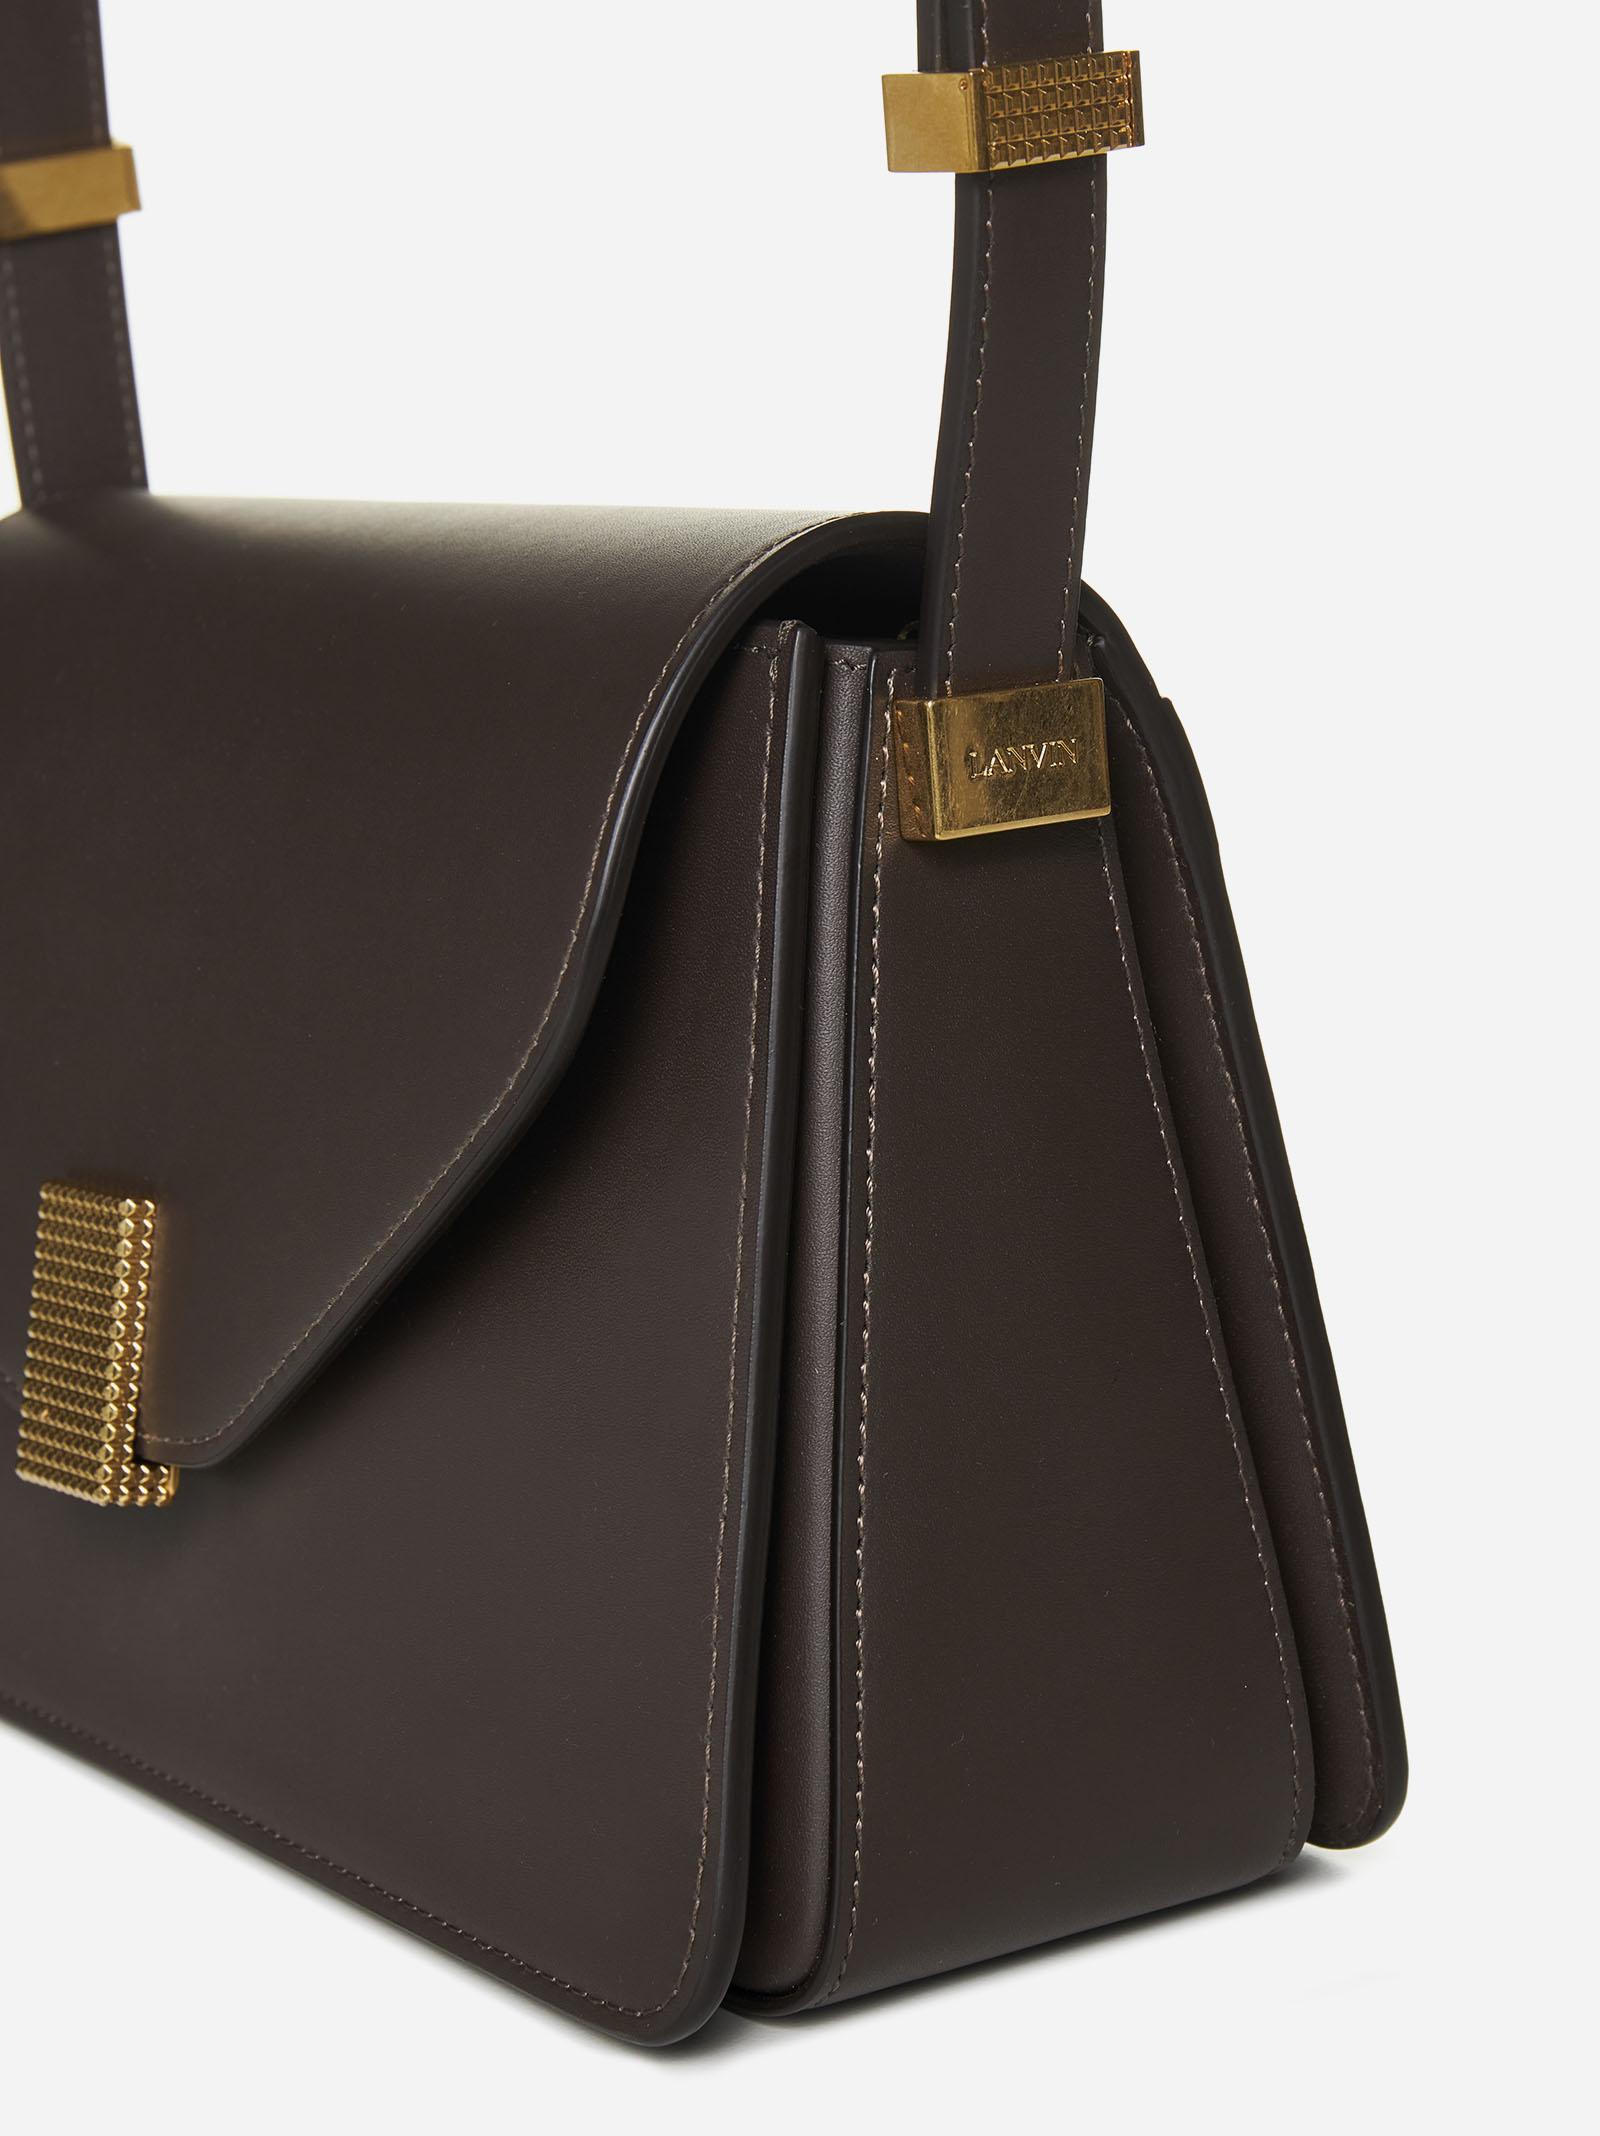 Lanvin Concerto Leather Shoulder Bag